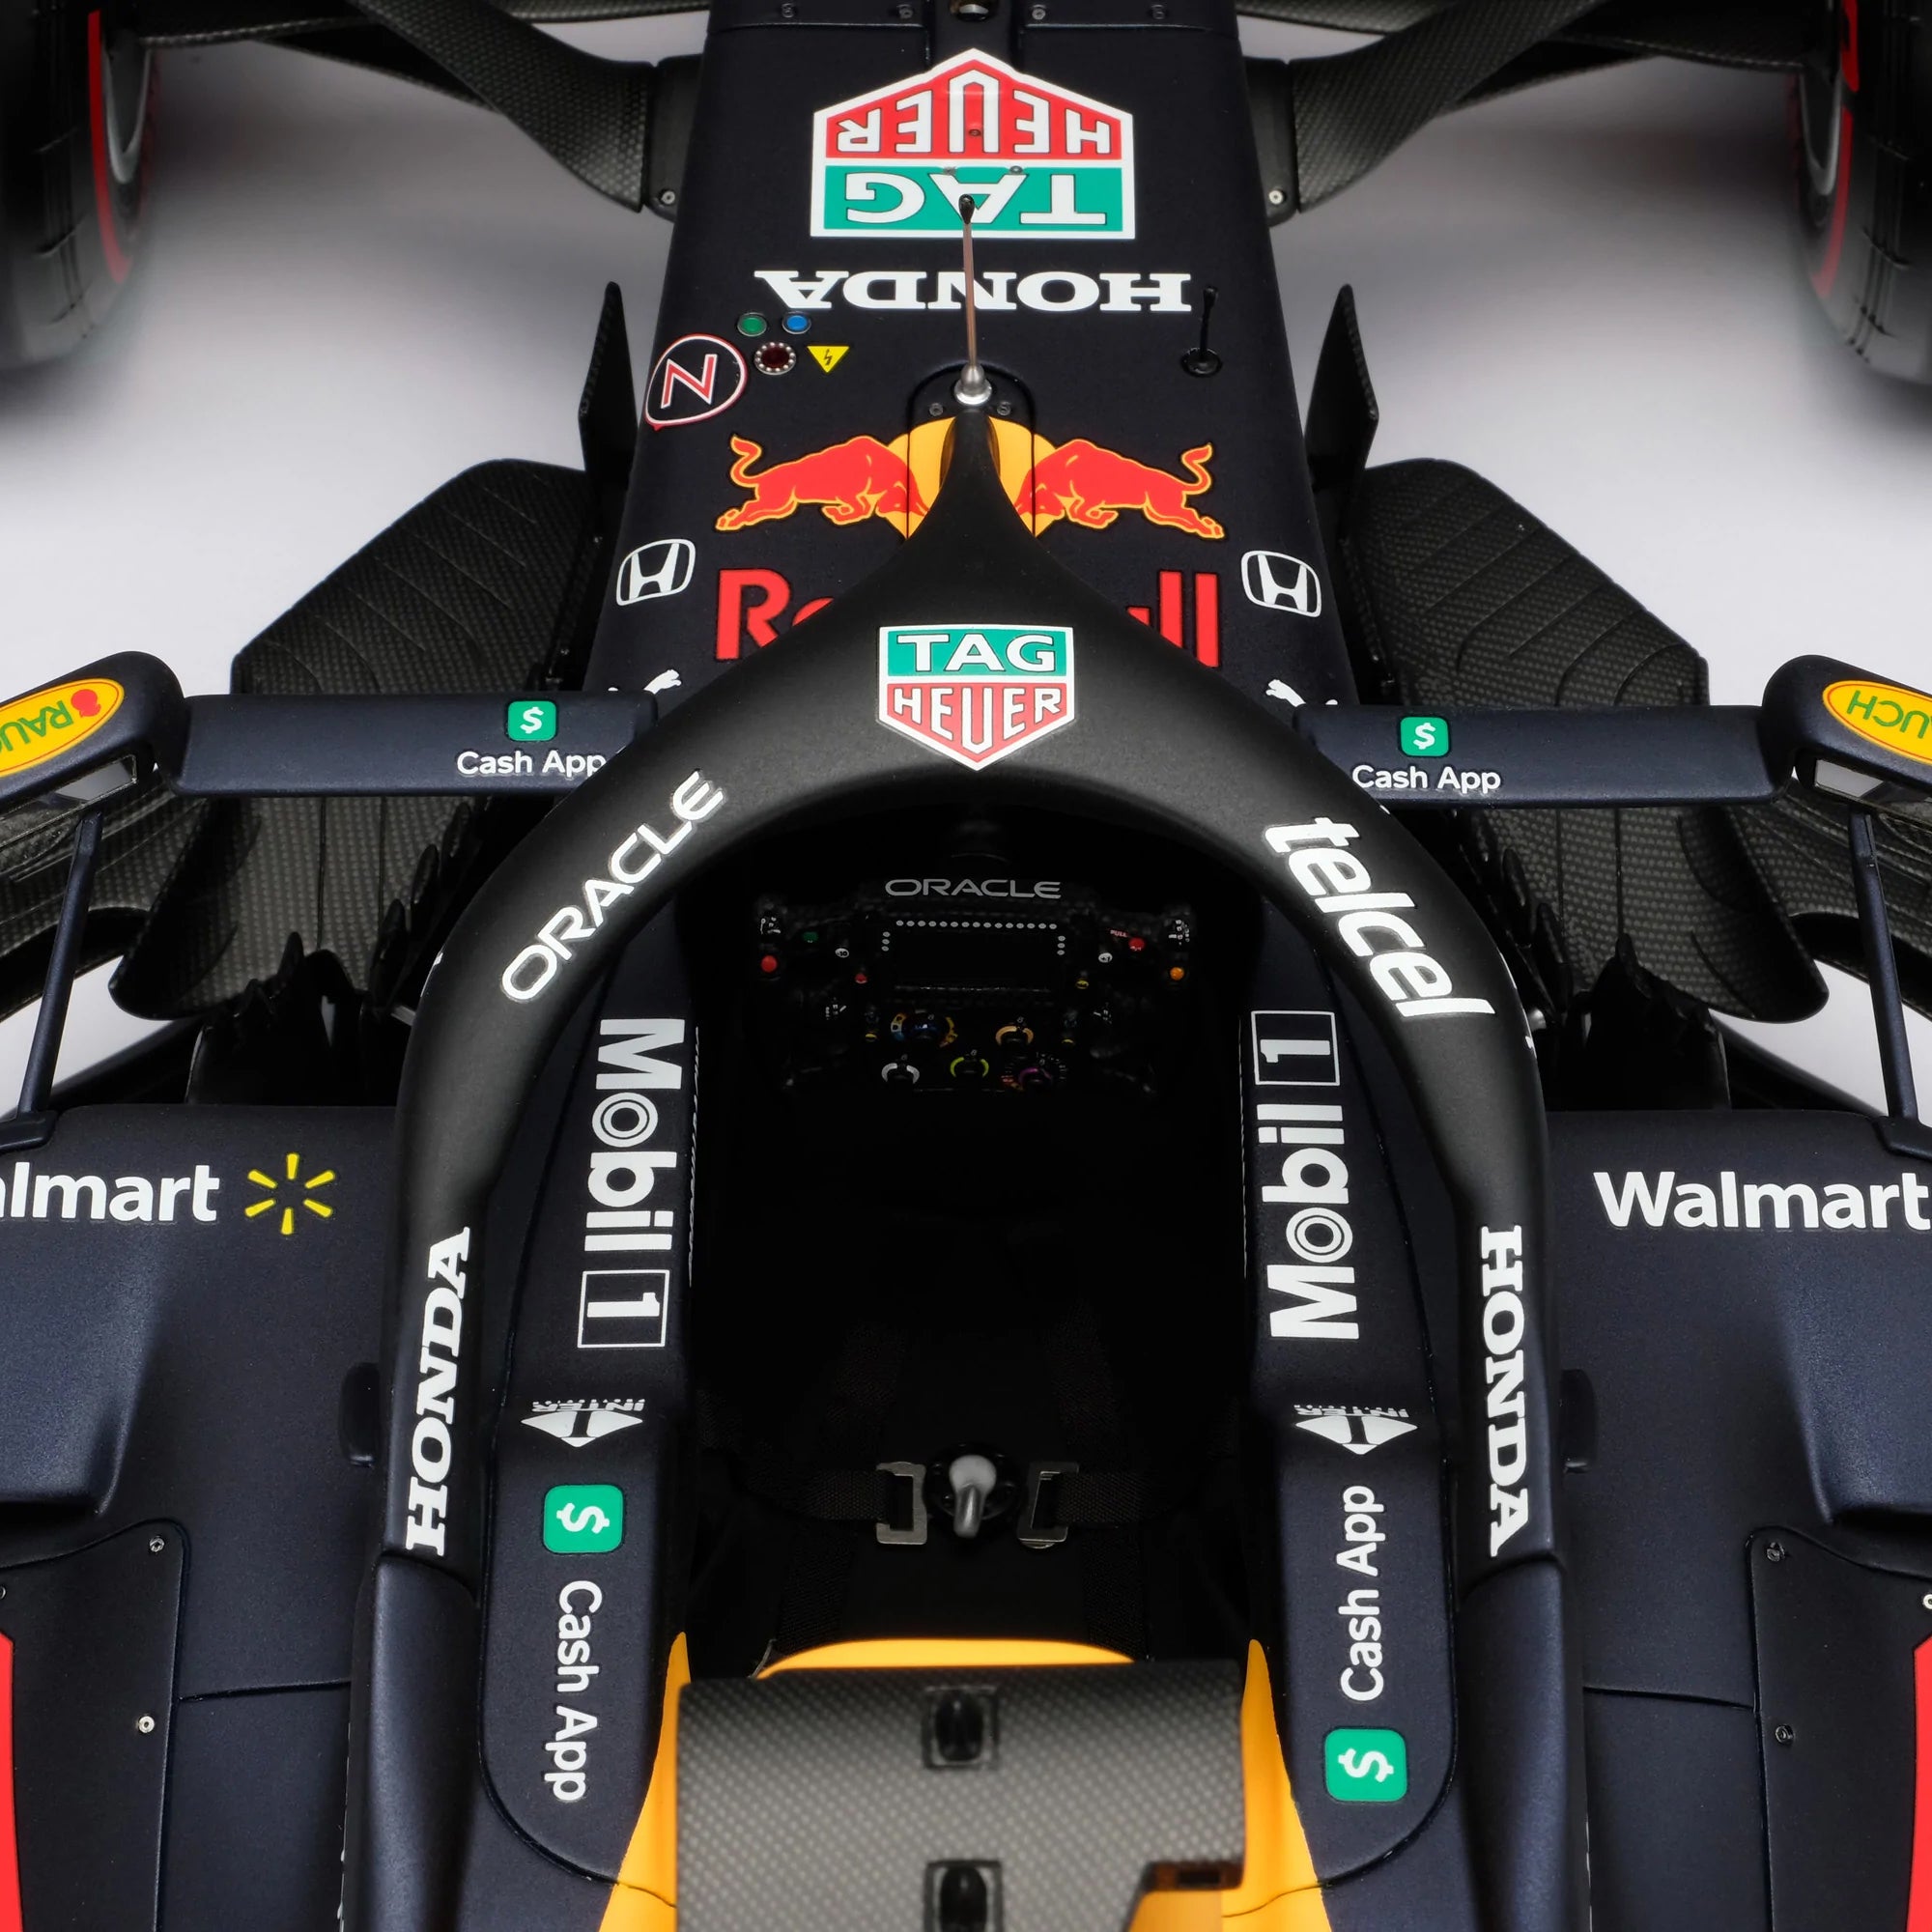 Max Verstappen 2021 Oracle Red Bull Racing RB16B 1:18 Scale Model – Abu Dhabi GP